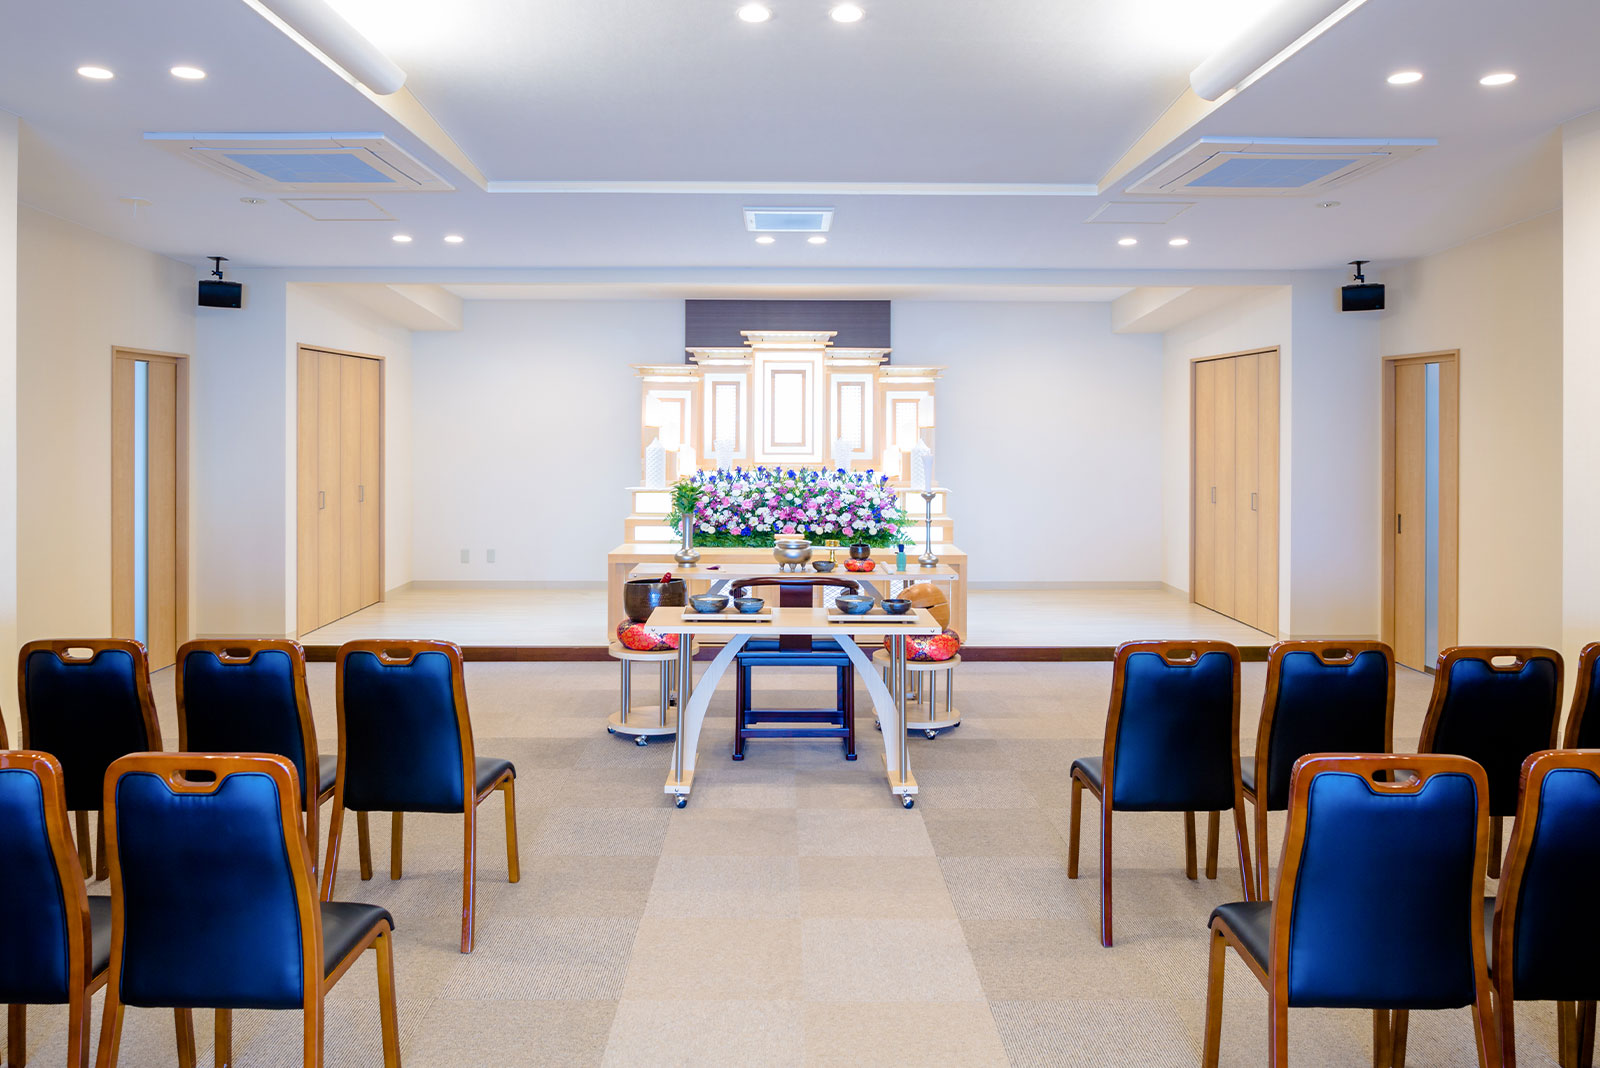 税込132,000円からできる家族葬のトワーズ® 浜松市のホール内装イメージ画像